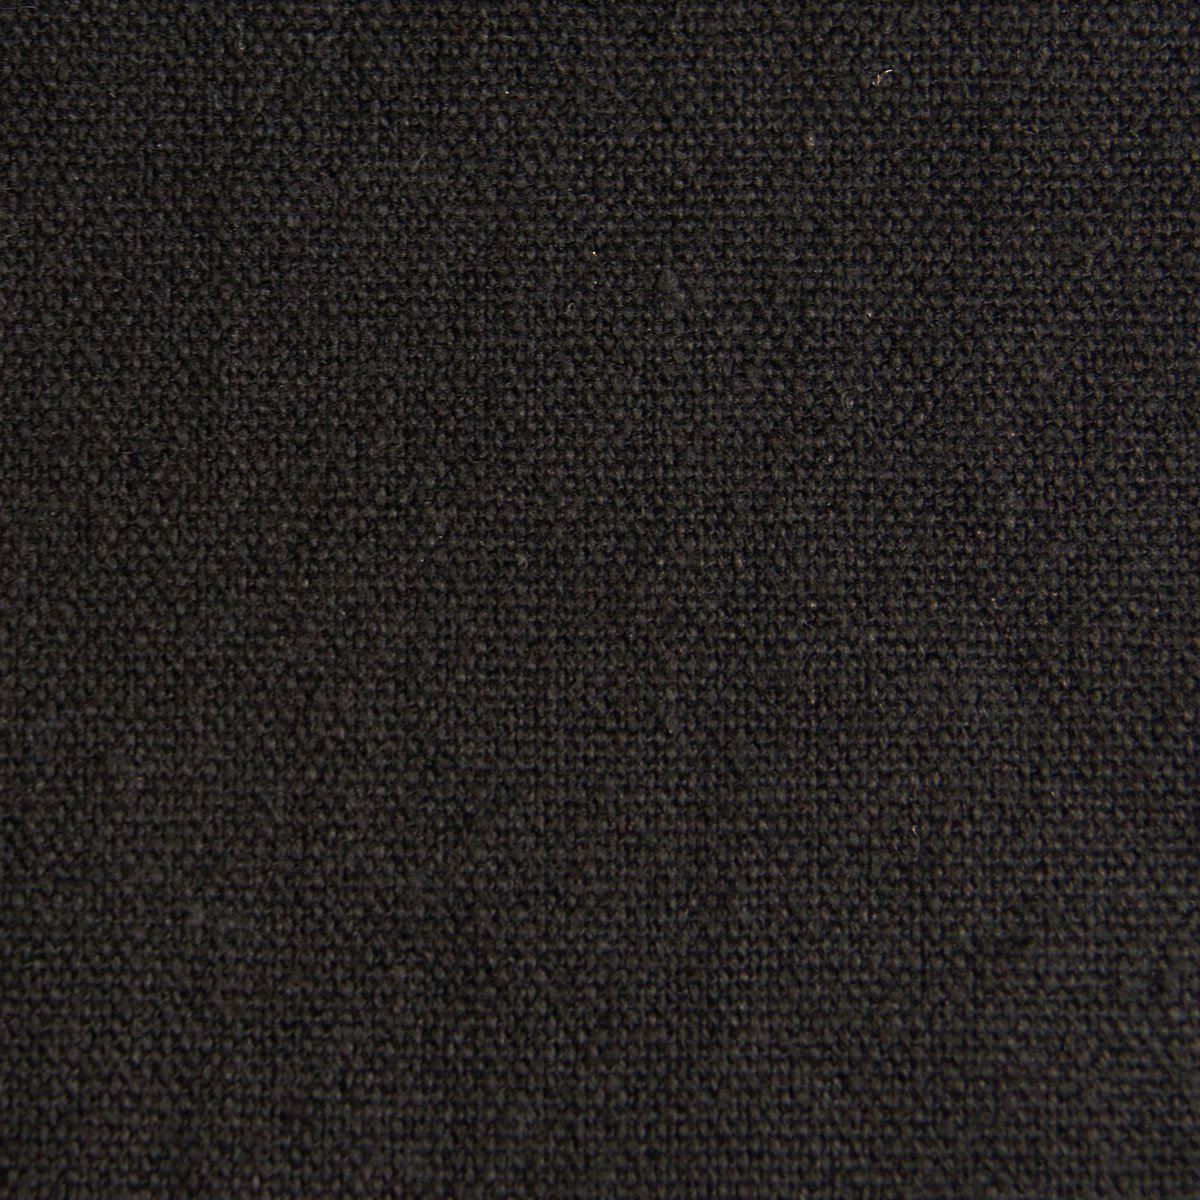 Hemp Organic Cotton Canvas - Black - woven - Earth Indigo